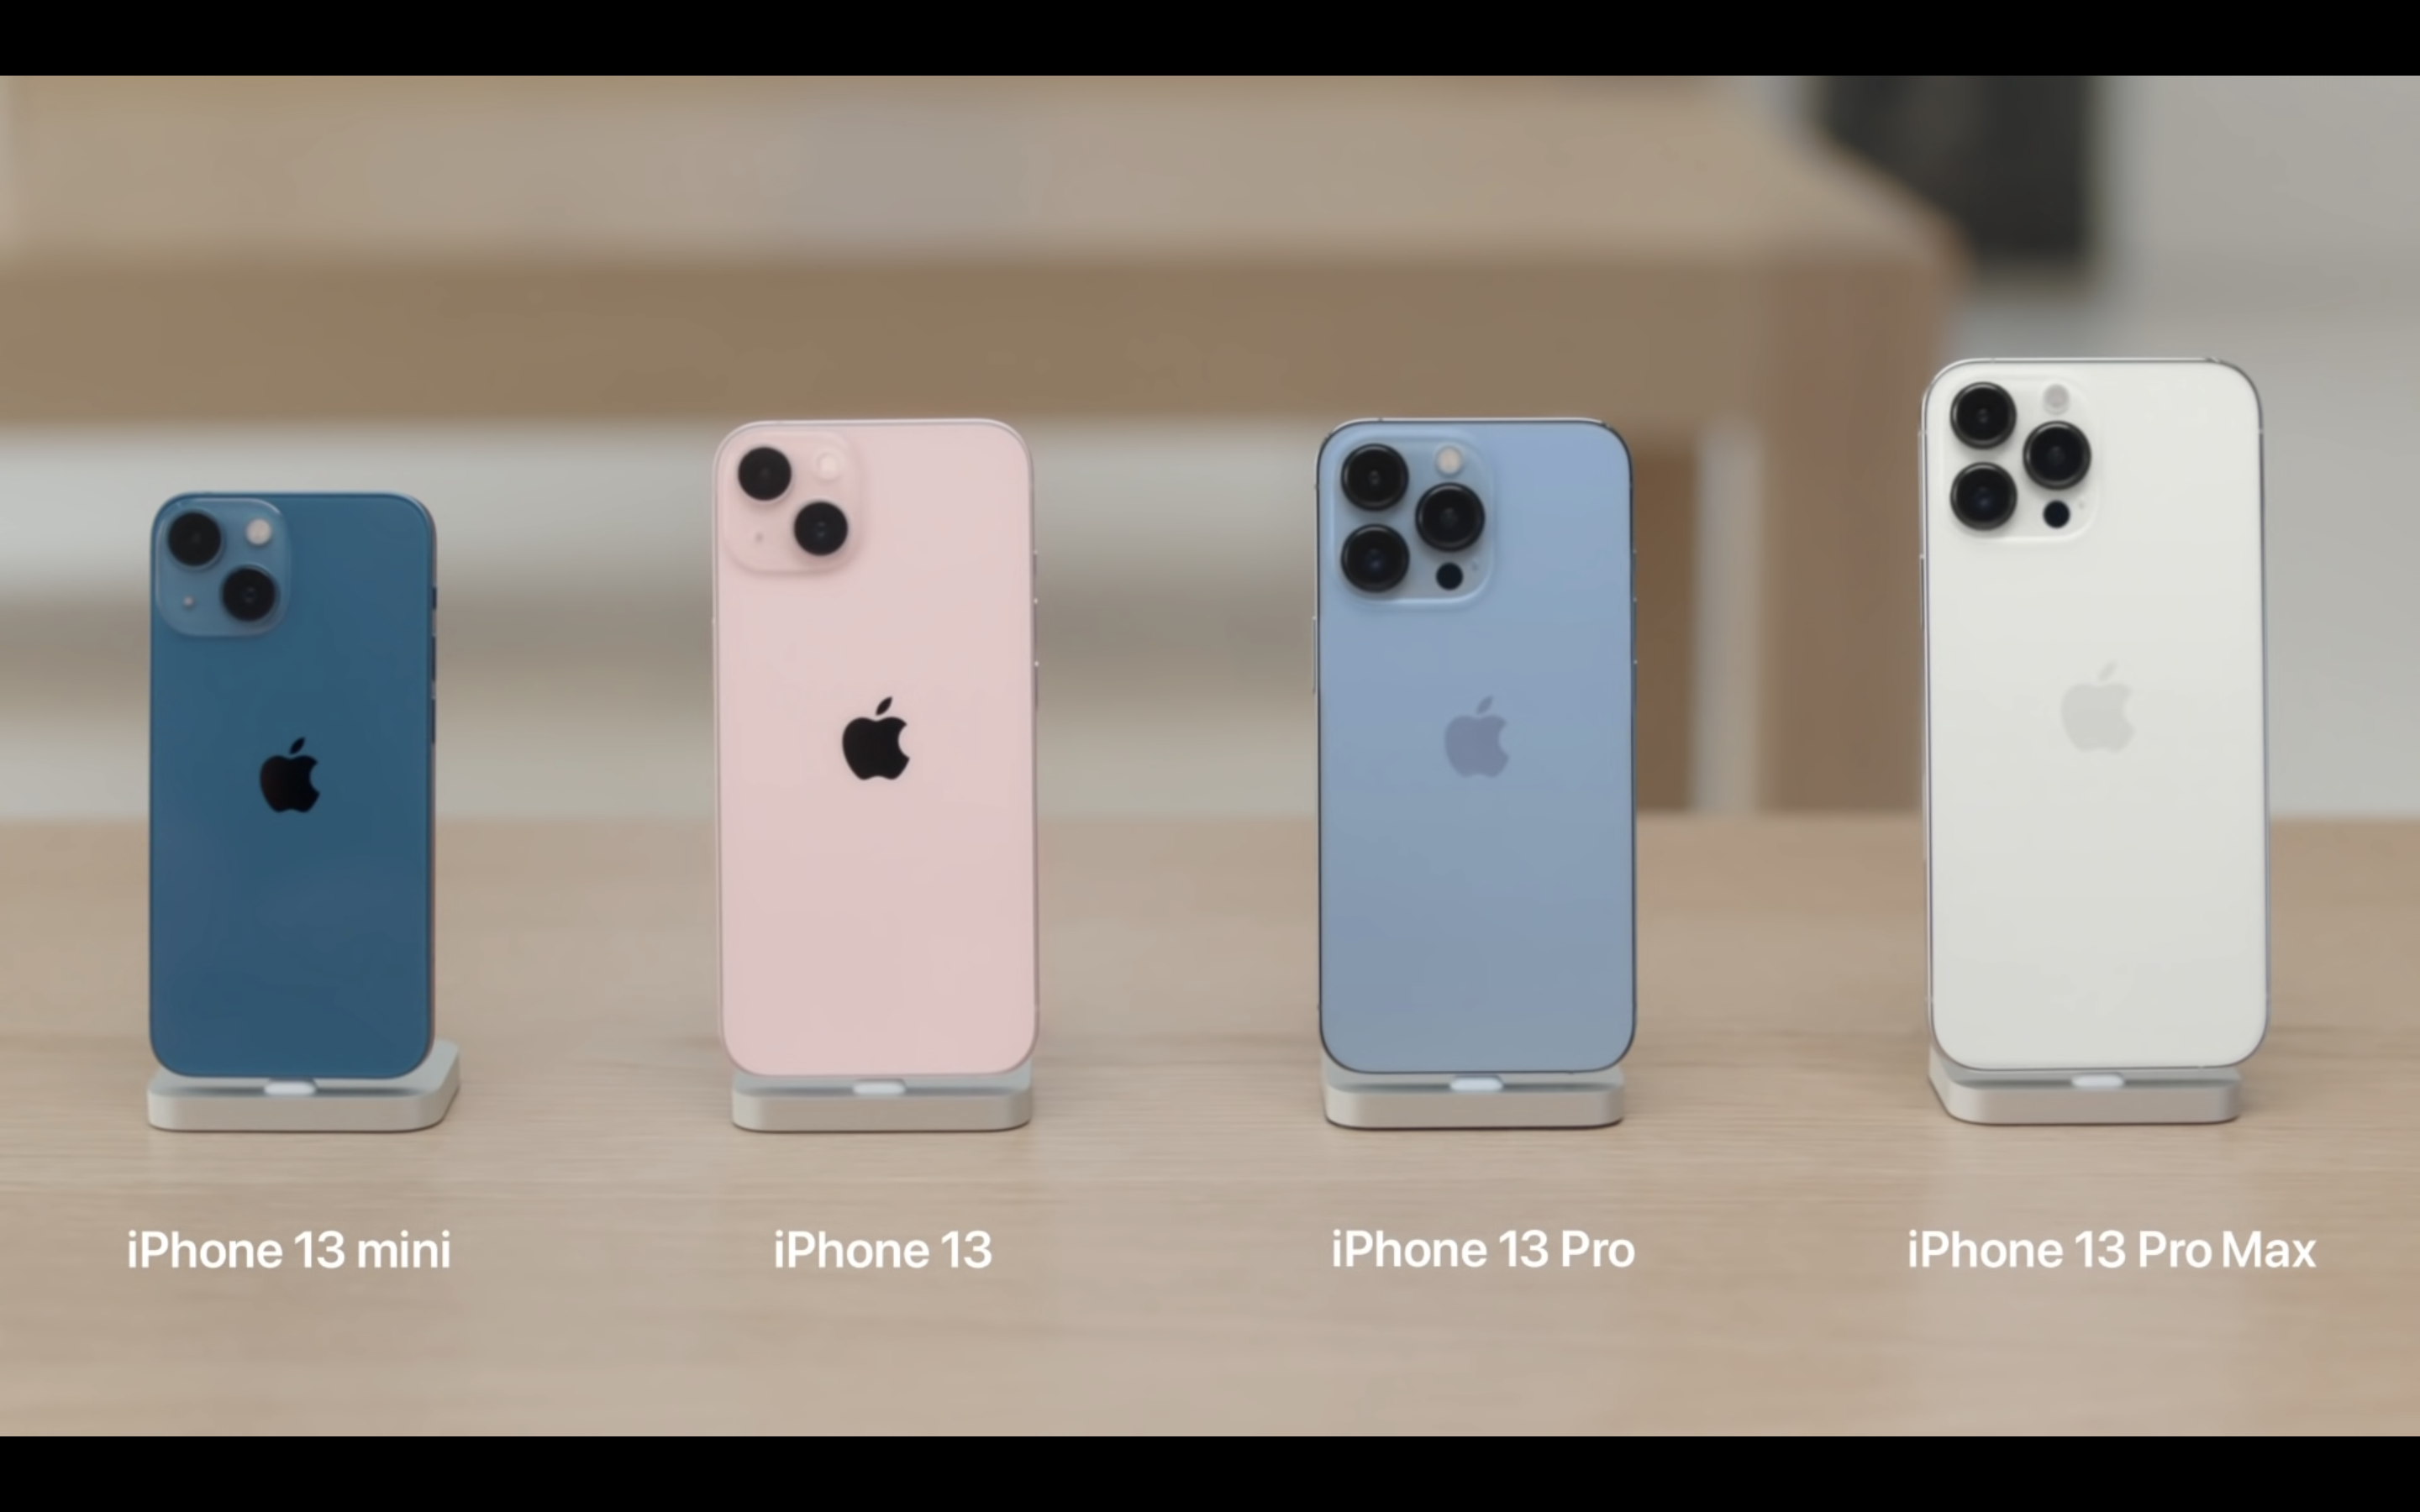 Tính năng iPhone 13 và màu sắc: iPhone 13 đã cho ra mắt với nhiều điểm đột phá về tính năng và thiết kế khiến người dùng đứng ngồi không yên. Nhưng đó không phải là tất cả, iPhone 13 còn có một bảng màu đầy sắc màu và thú vị để bạn lựa chọn. Với những chiếc iPhone 13 mới, bạn sẽ cảm thấy rất may mắn khi được sở hữu một chiếc điện thoại đẹp mắt, hàng đầu và đầy tính năng, với màu sắc yêu thích của bạn.